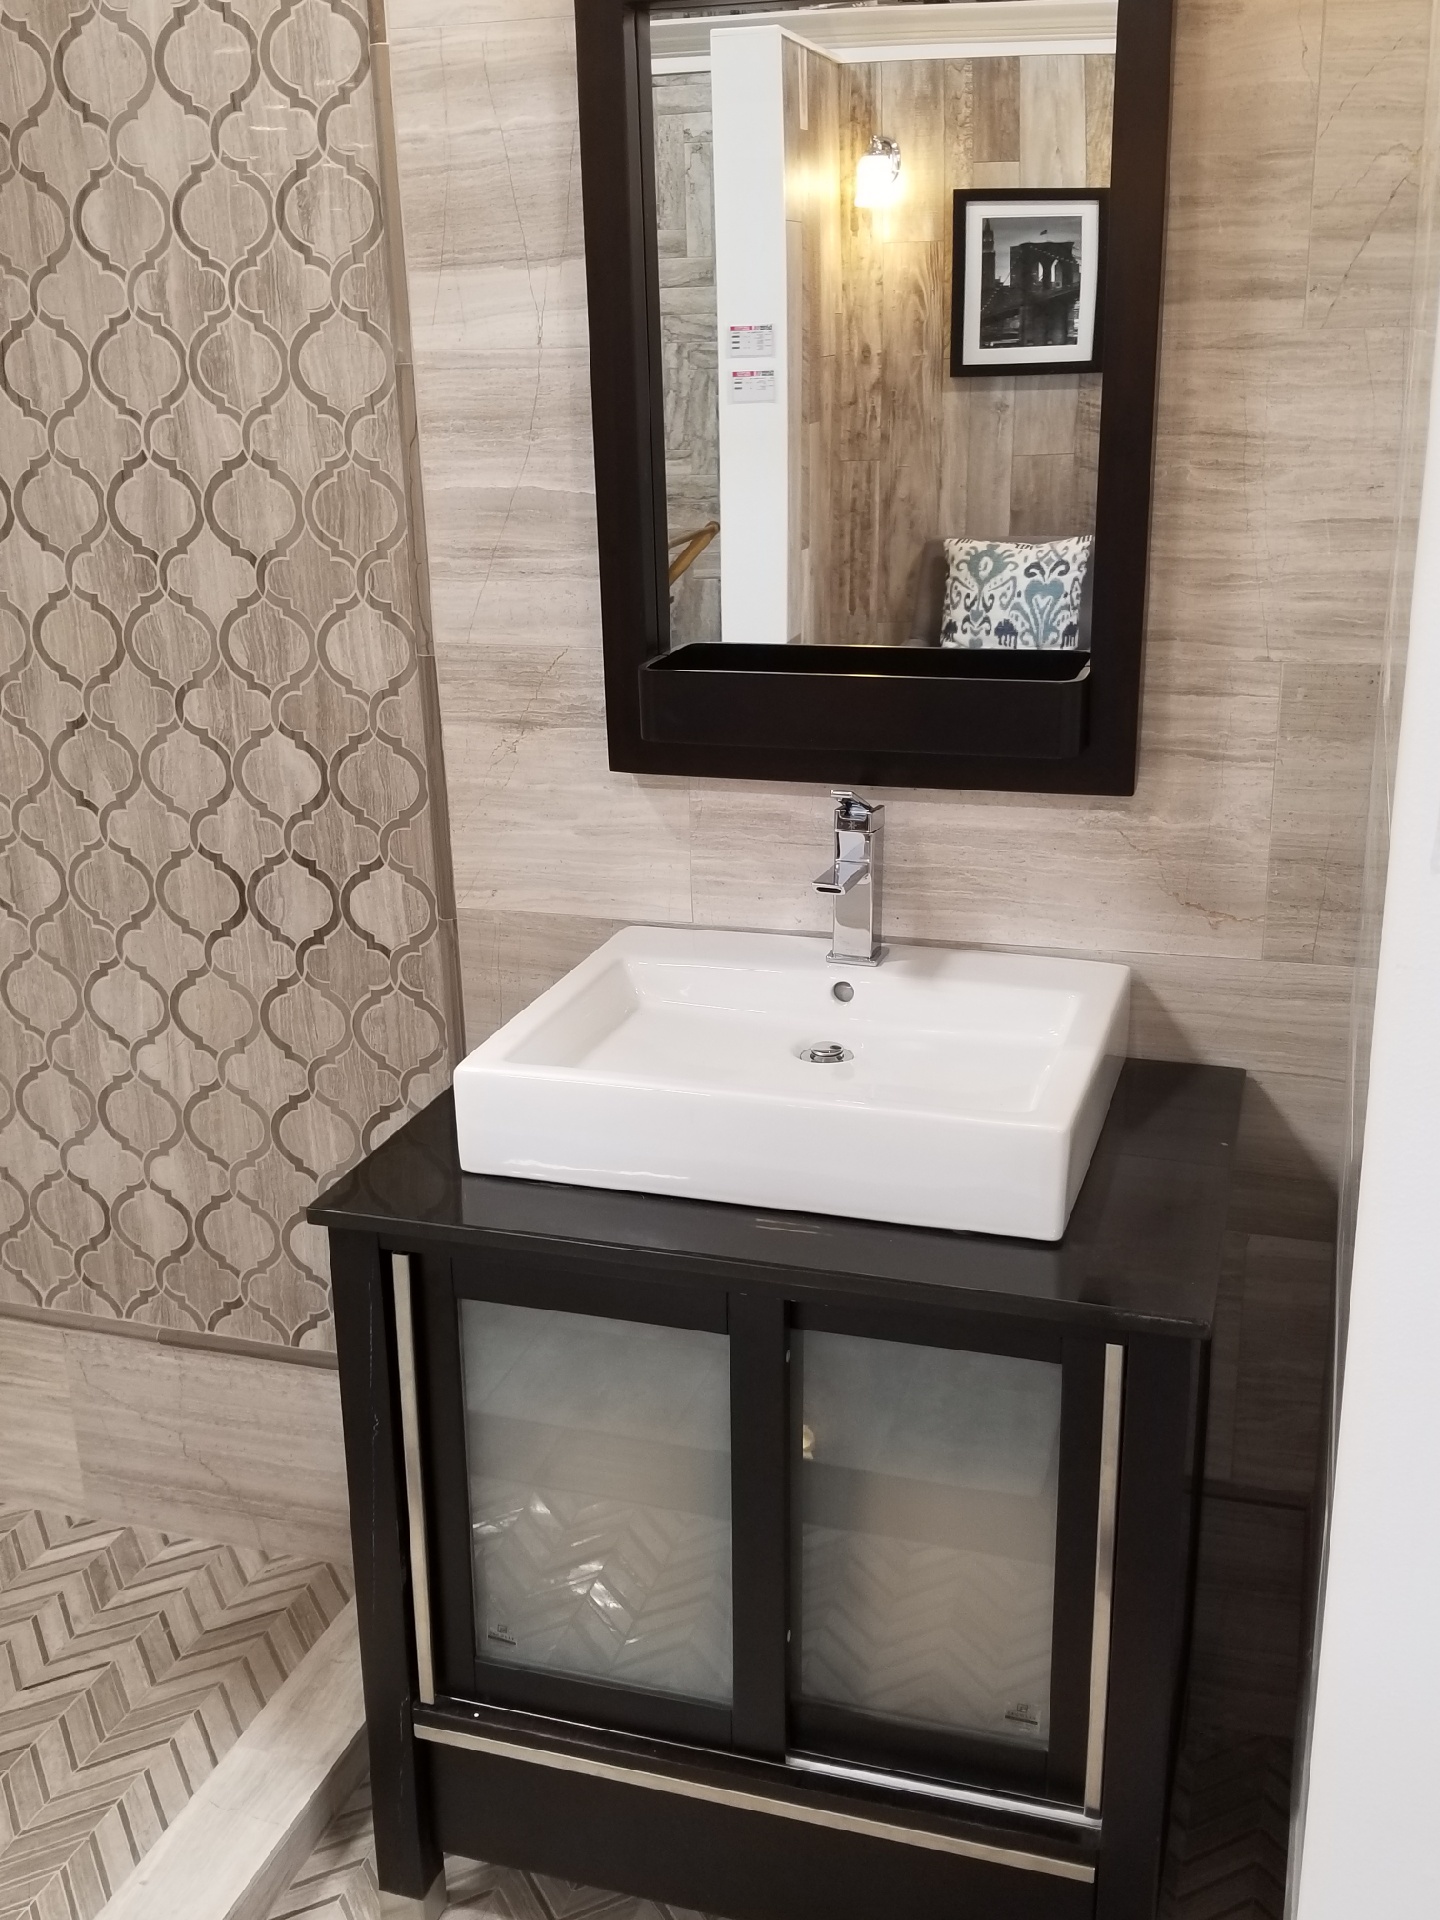 Yes Dear Designs - Bathroom Remodel with Walk-in Shower in Philadelphia.jpeg